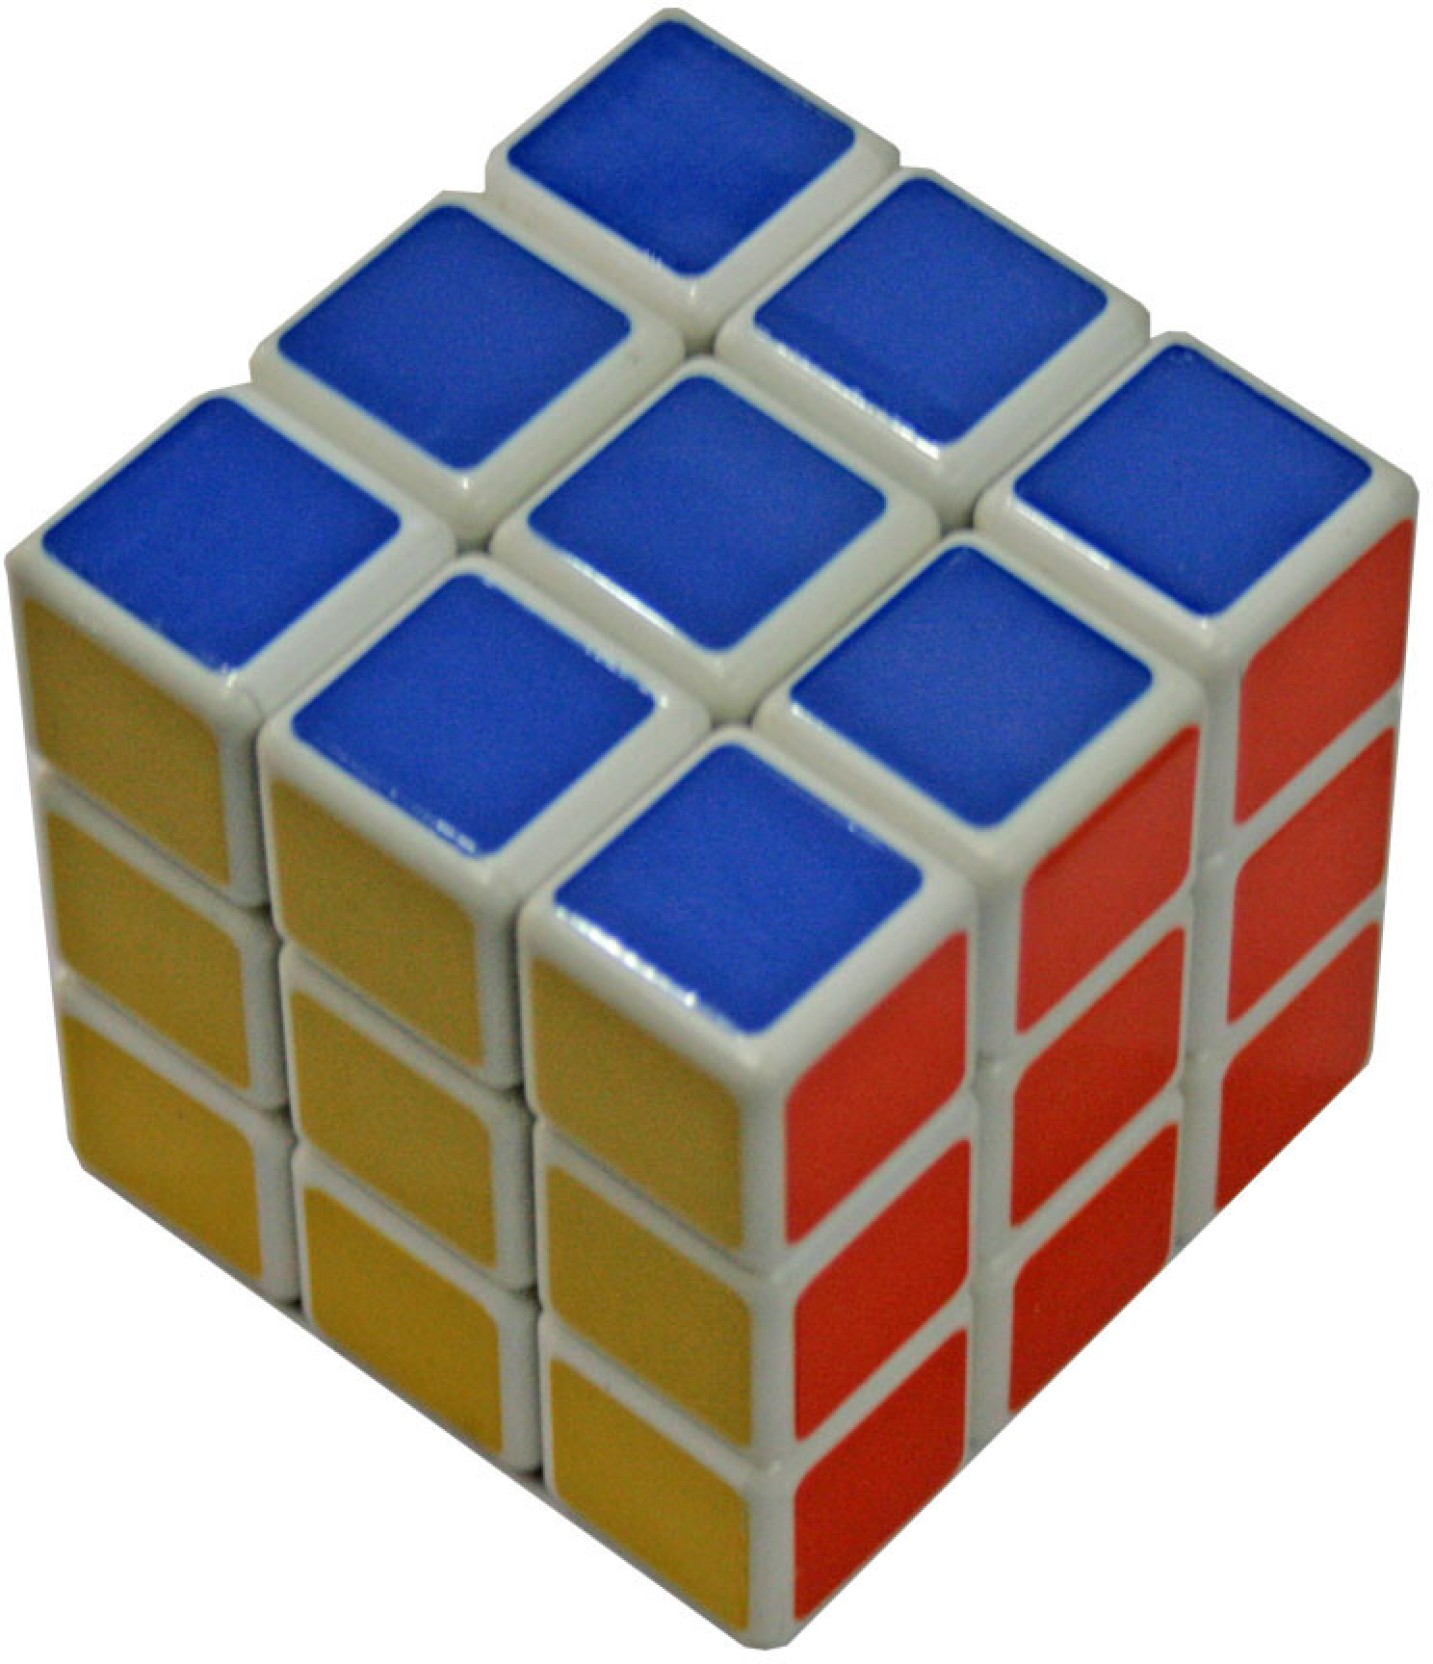 Кубик Рубика 1x2x111. Rubik's Cube 3x3. Иви кубик Рубика. 3x3 Rubik's Cube solution.